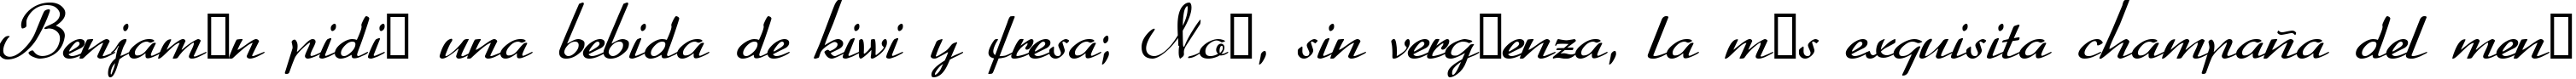 Пример написания шрифтом Heather текста на испанском